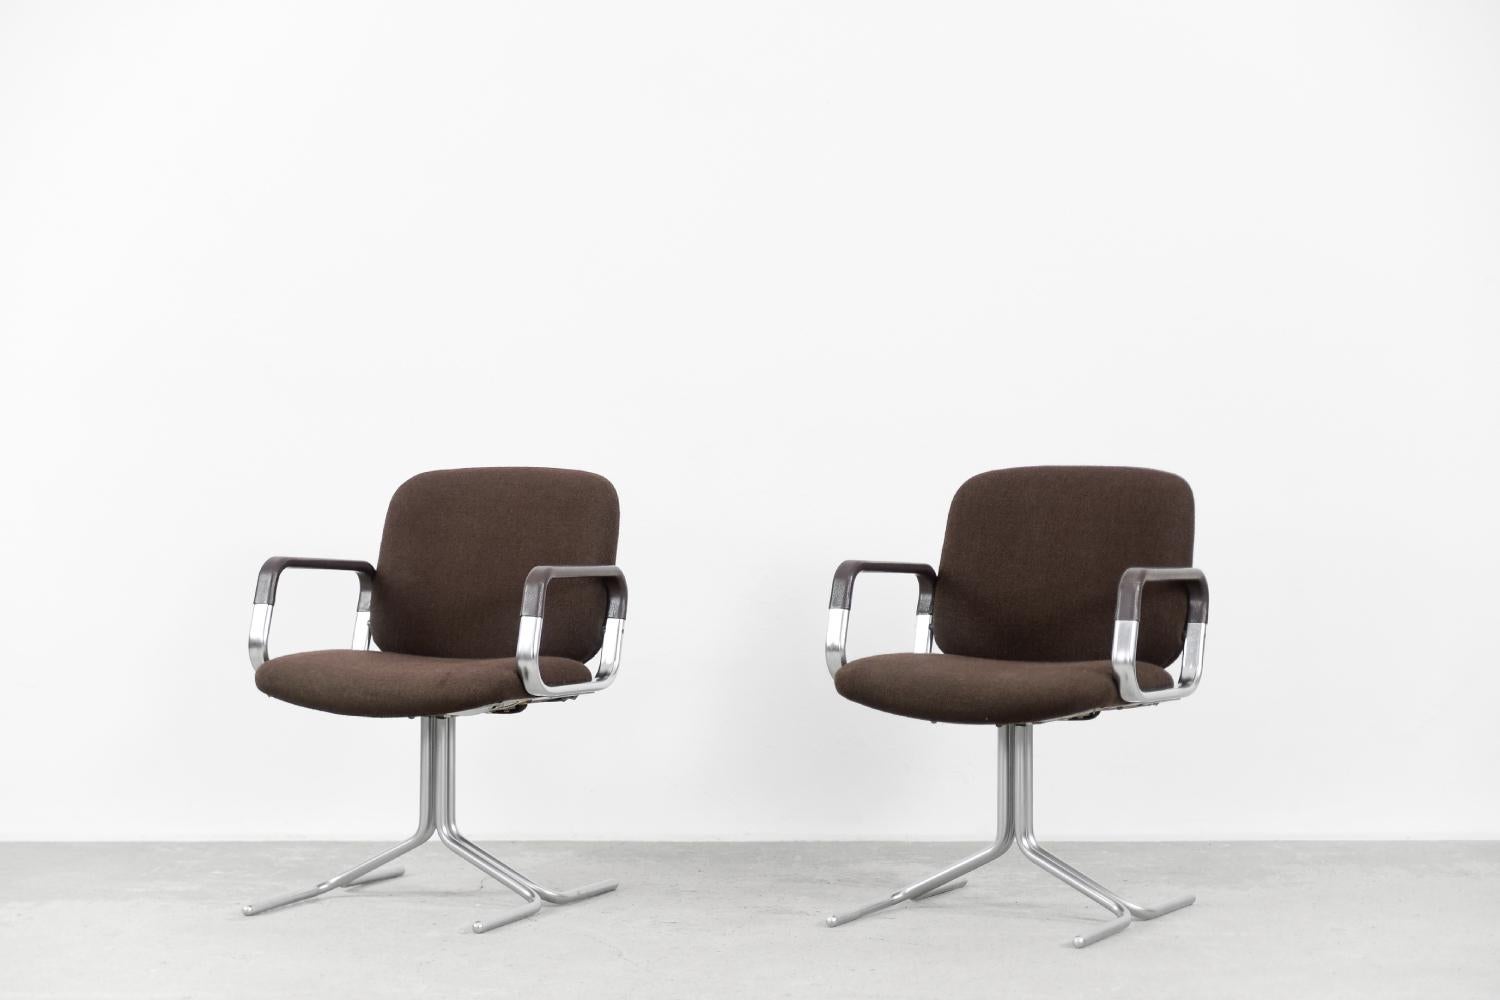 Cet ensemble de deux chaises modernes a été fabriqué à Mauser, en Allemagne, dans les années 1970. Le cadre a été fabriqué à partir de solides tubulaires en aluminium anodisé et il est caractéristique du design des Mausers. La sellerie est d'origine